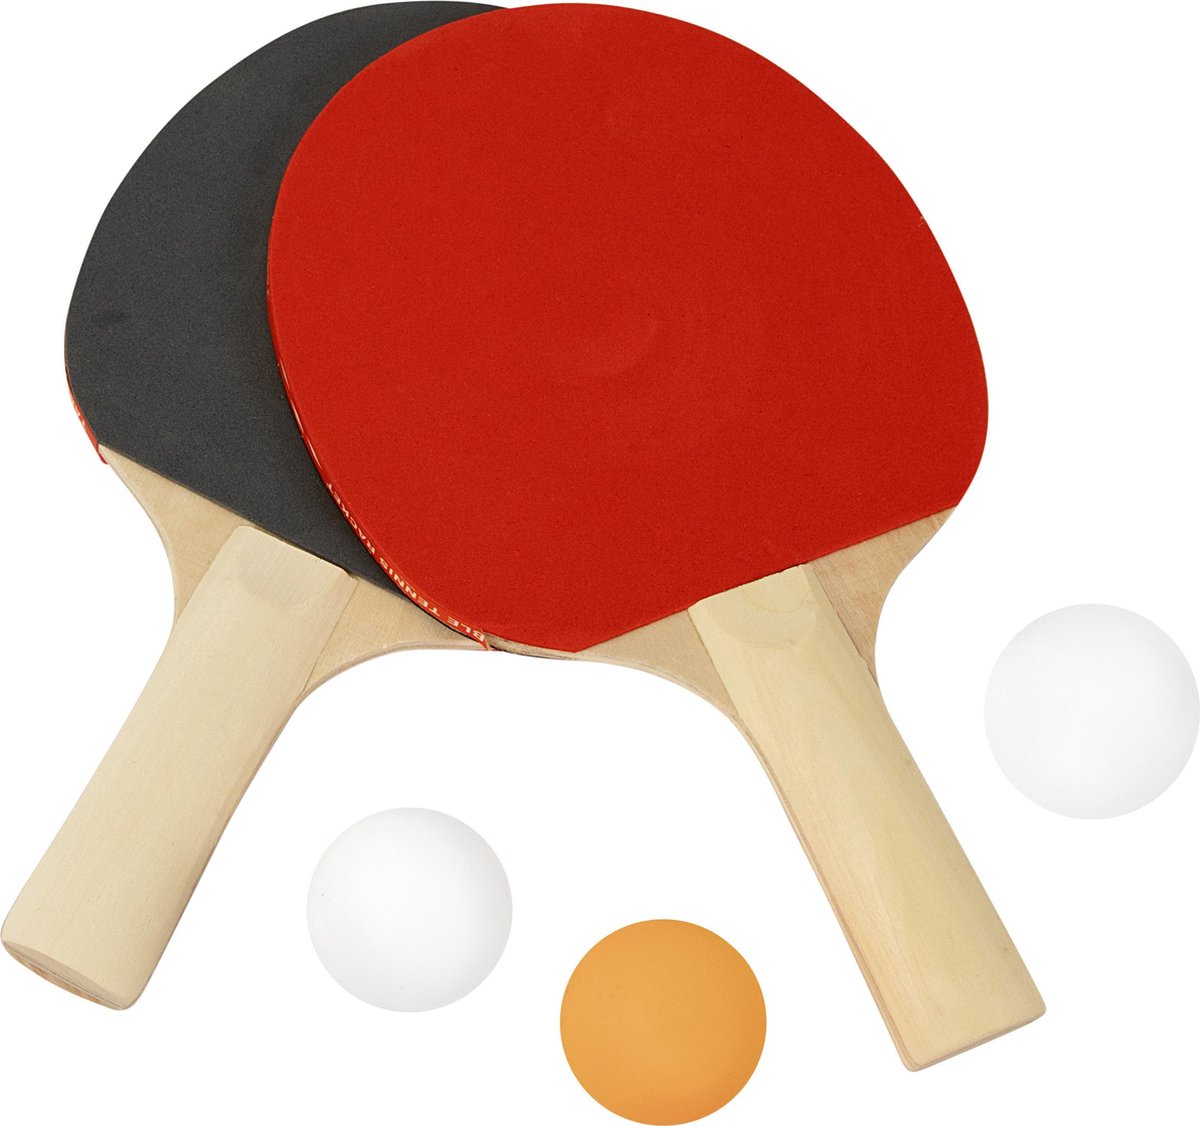 Tafeltennis batjes inclusief ballen - Tennisbatjes compleet met 3 ballen - Buitenspeelgoed